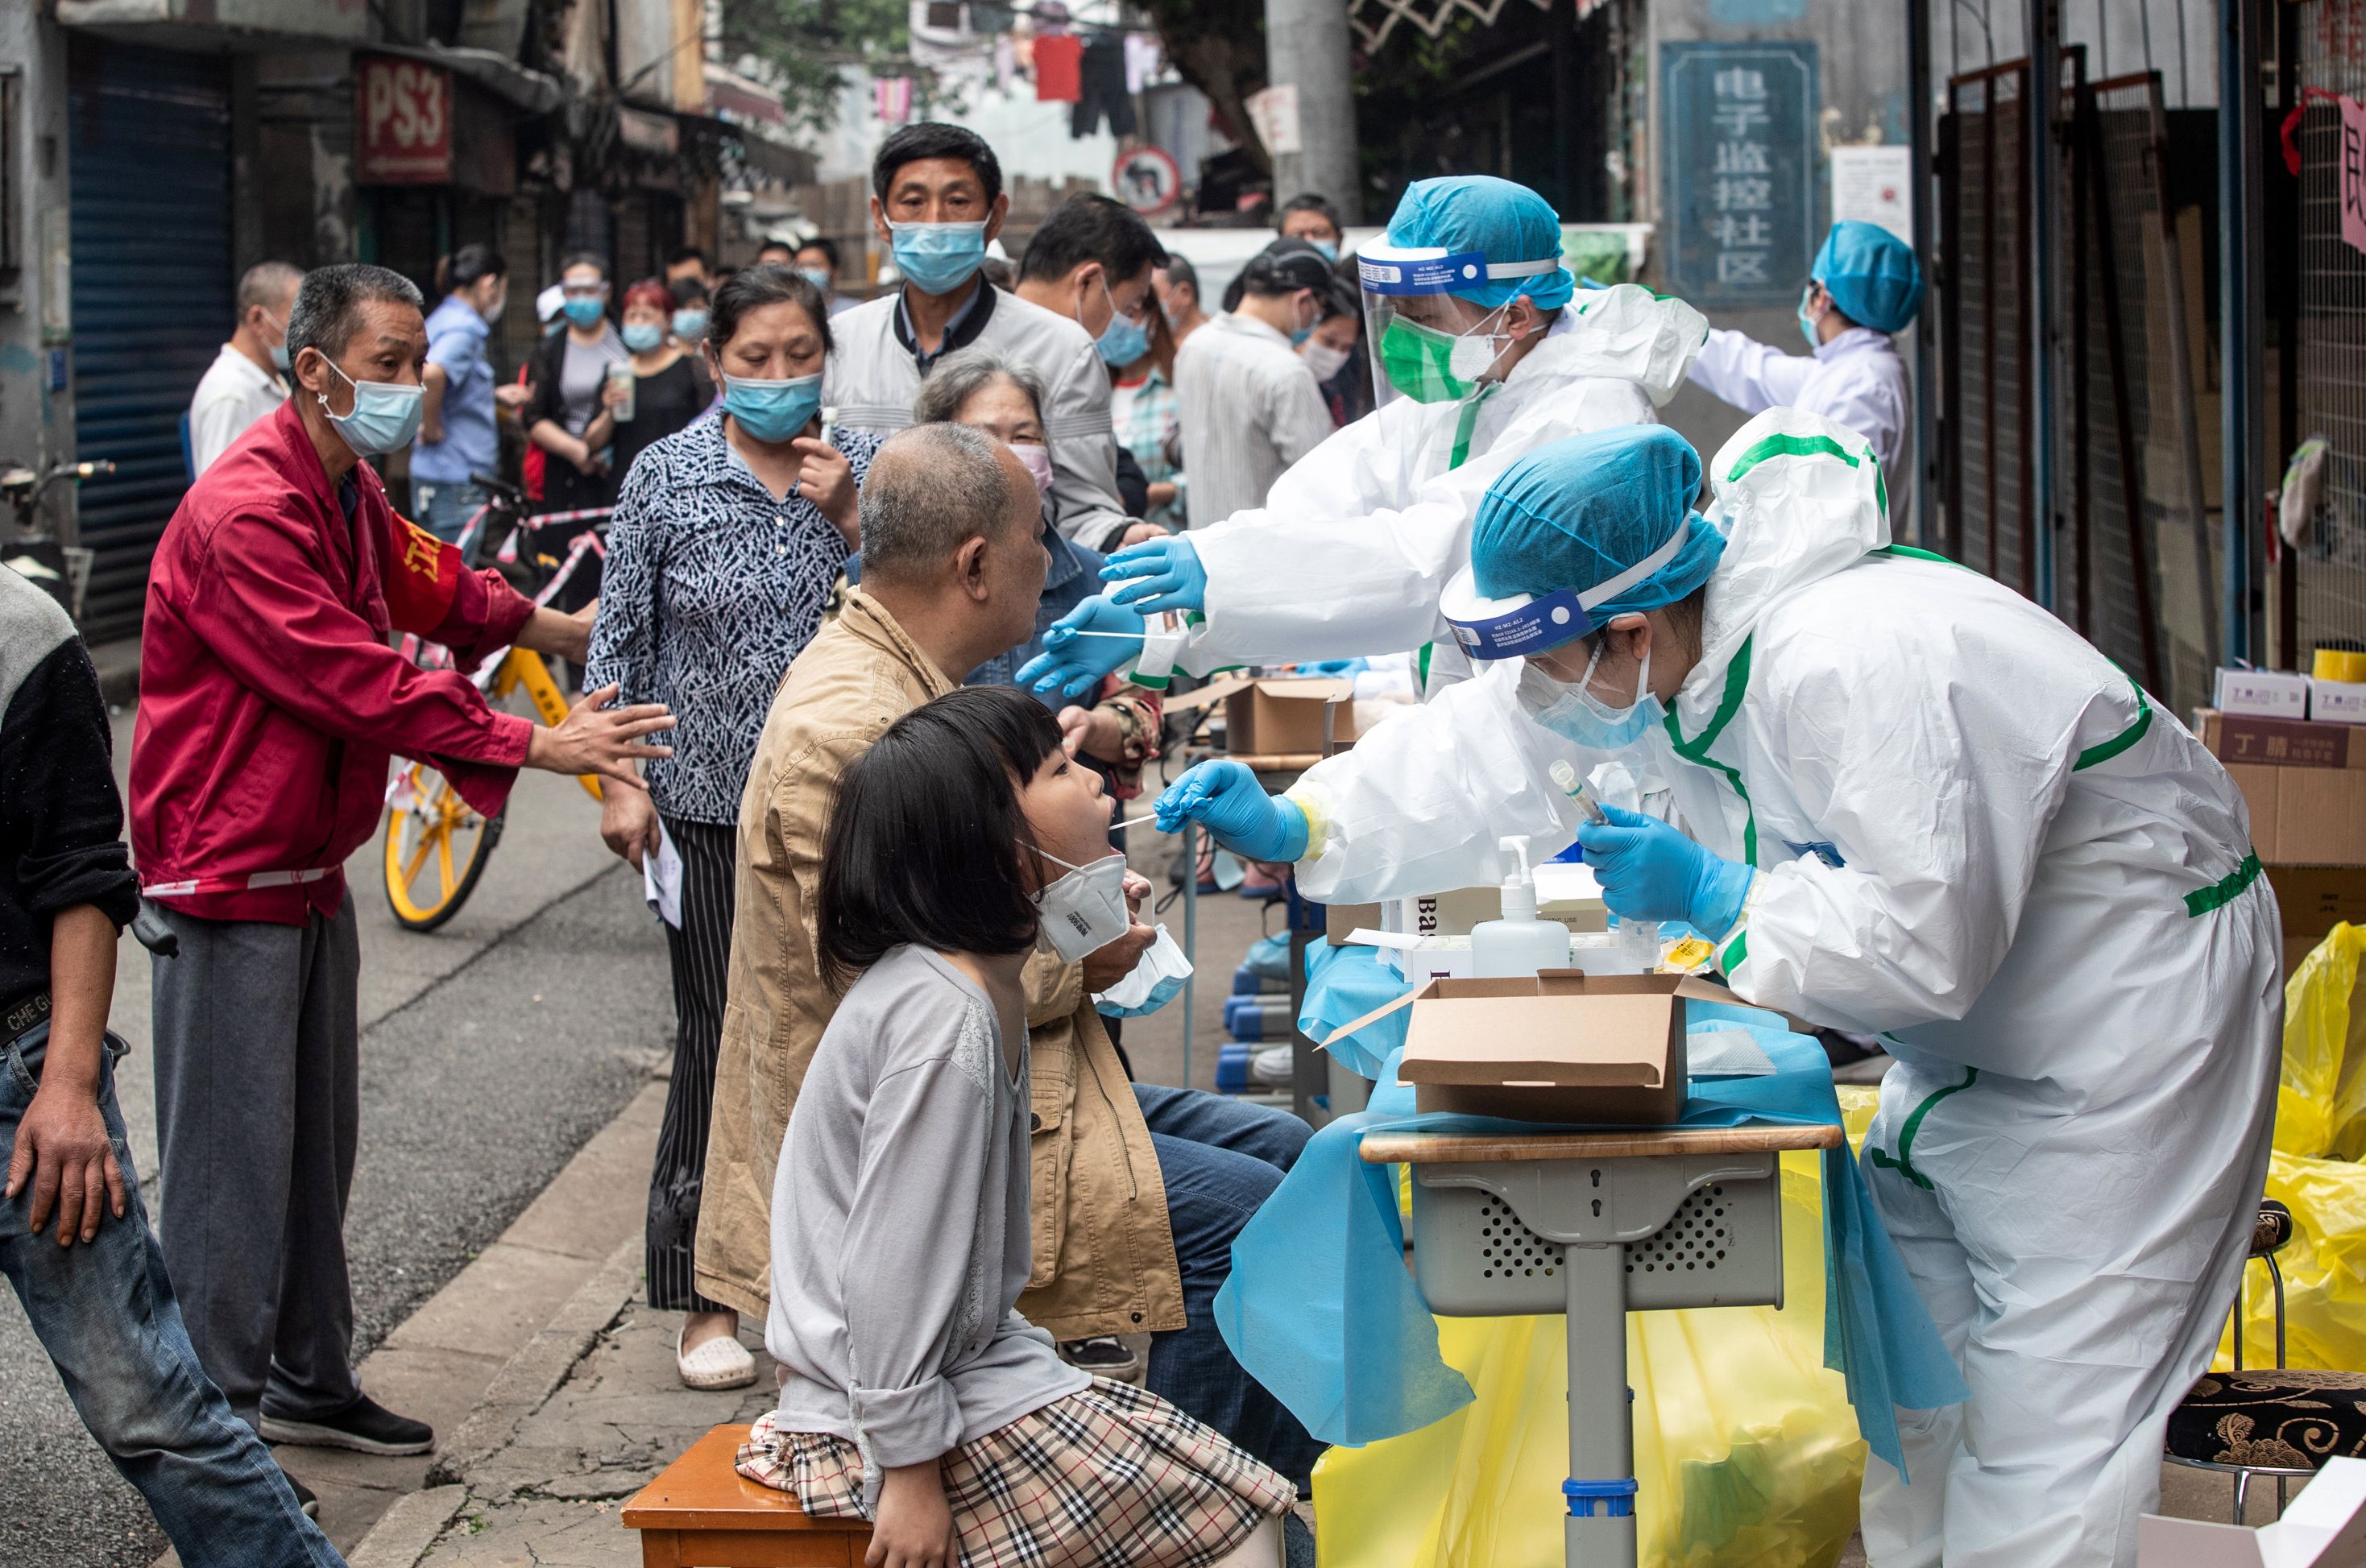 Un funcionario de China admitió que se destruyeron muestras del covid-19 al inicio de la pandemia. (Foto Prensa Libre: Agence France-Presse)